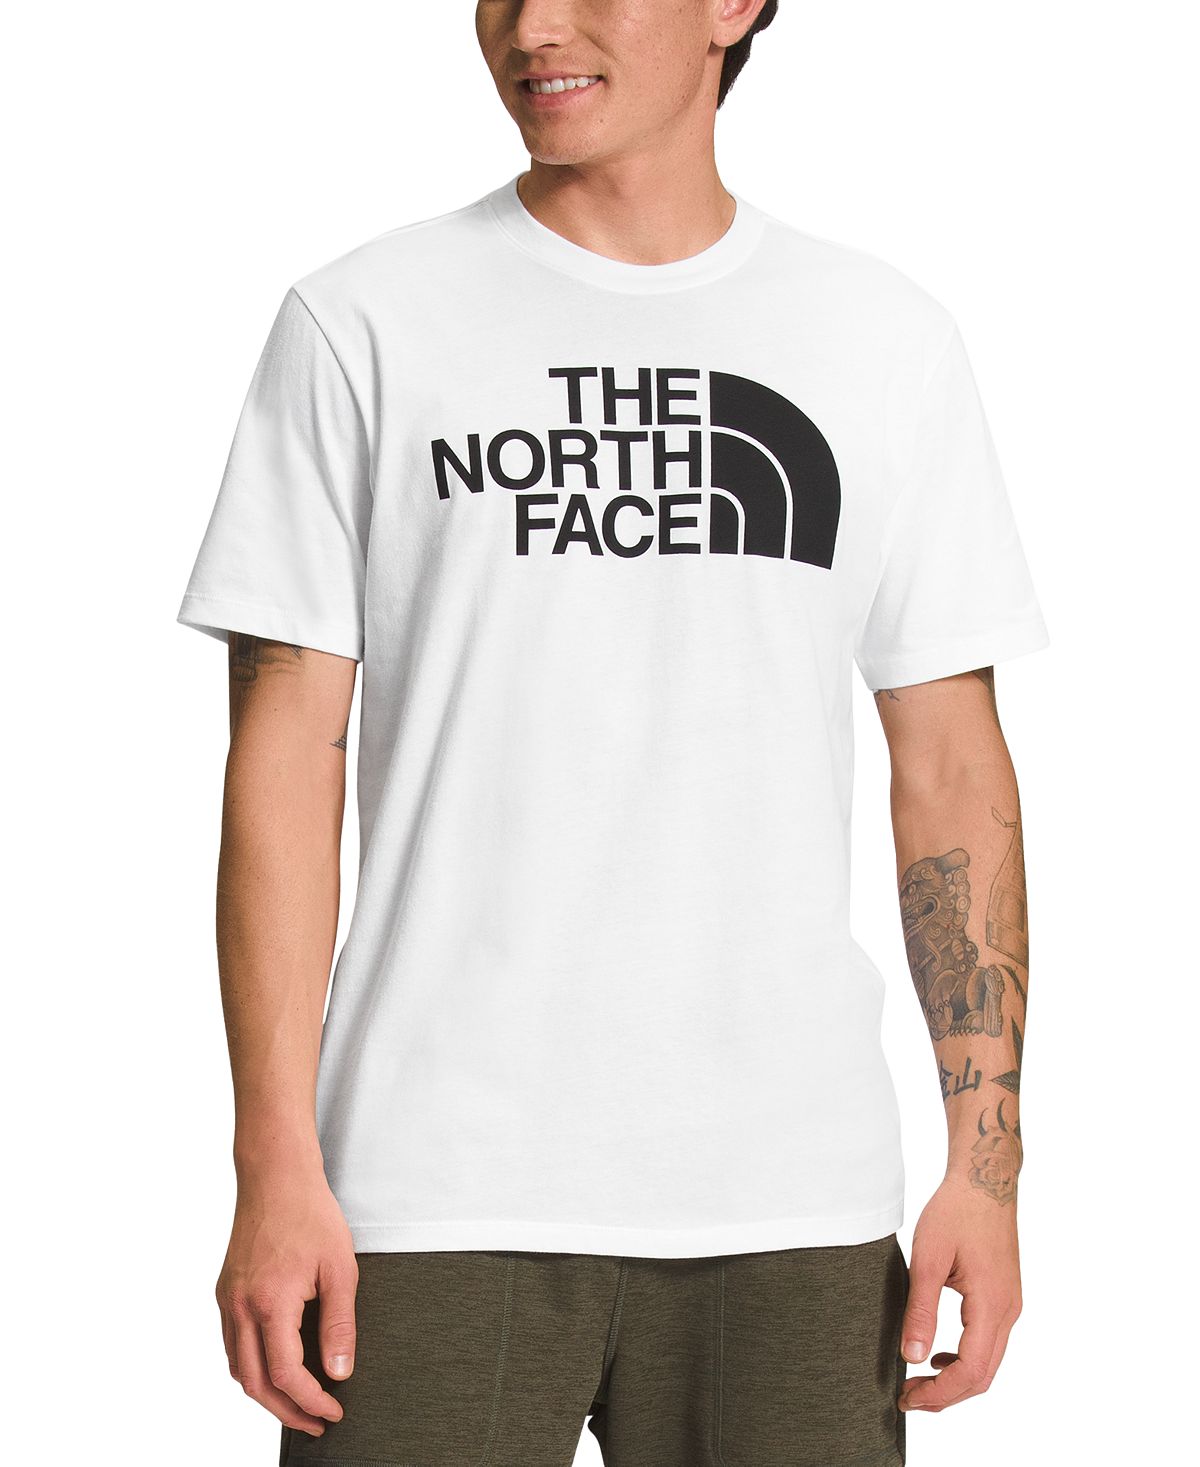 Мужская футболка с полукупольным логотипом The North Face цена и фото